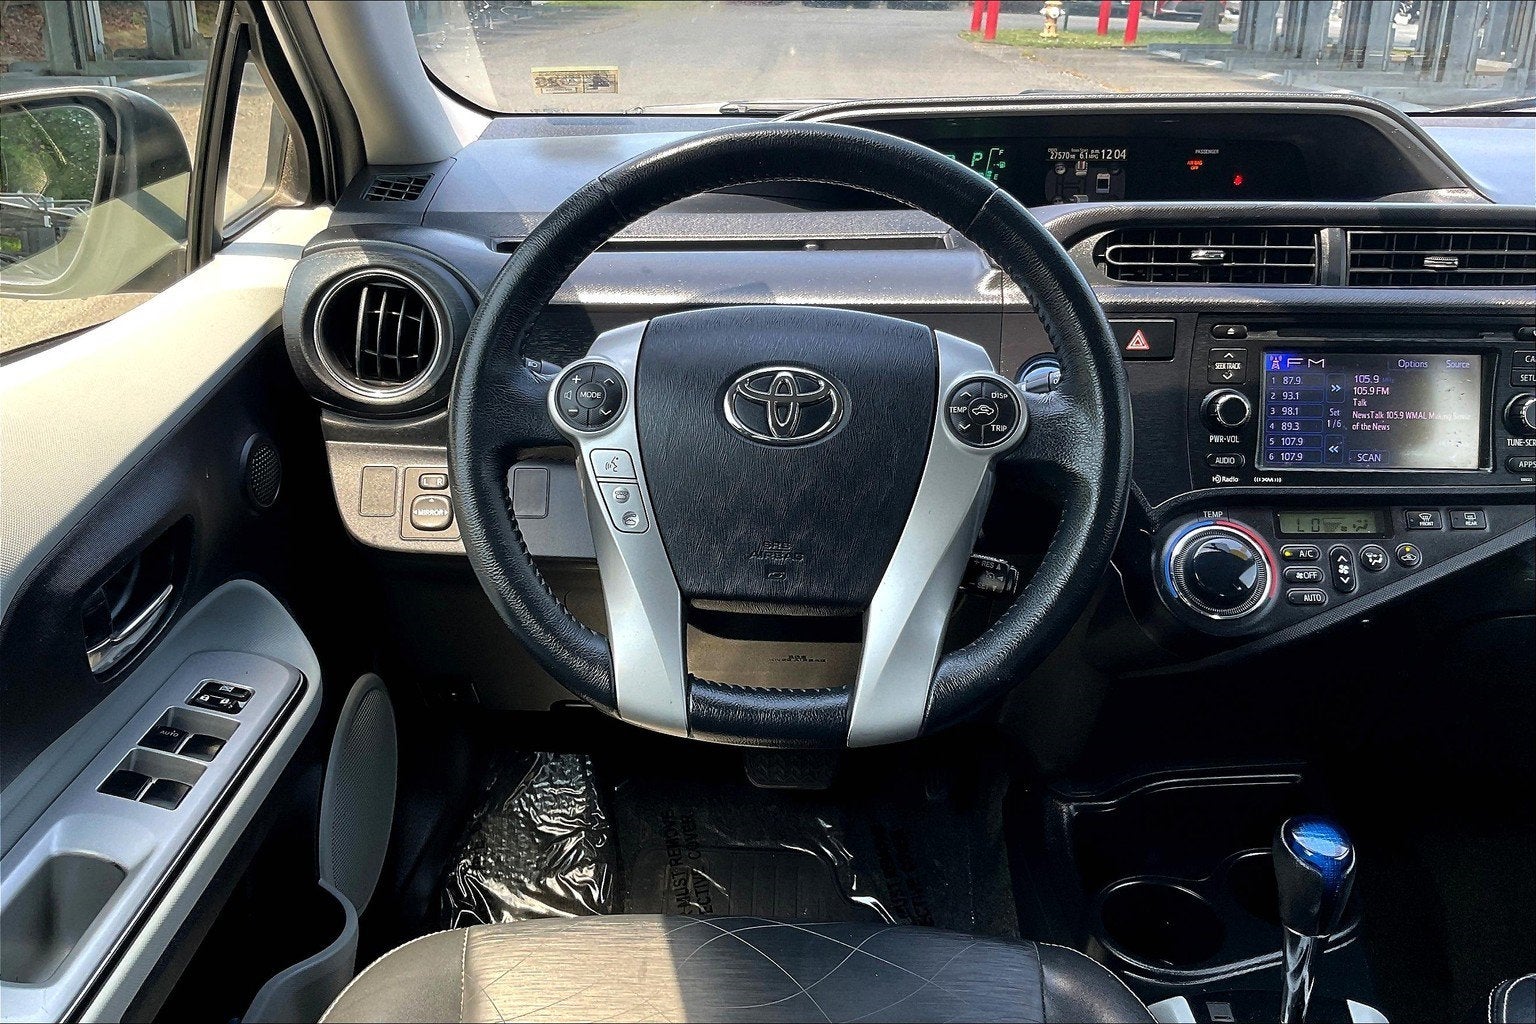 2013 Toyota Prius c Four